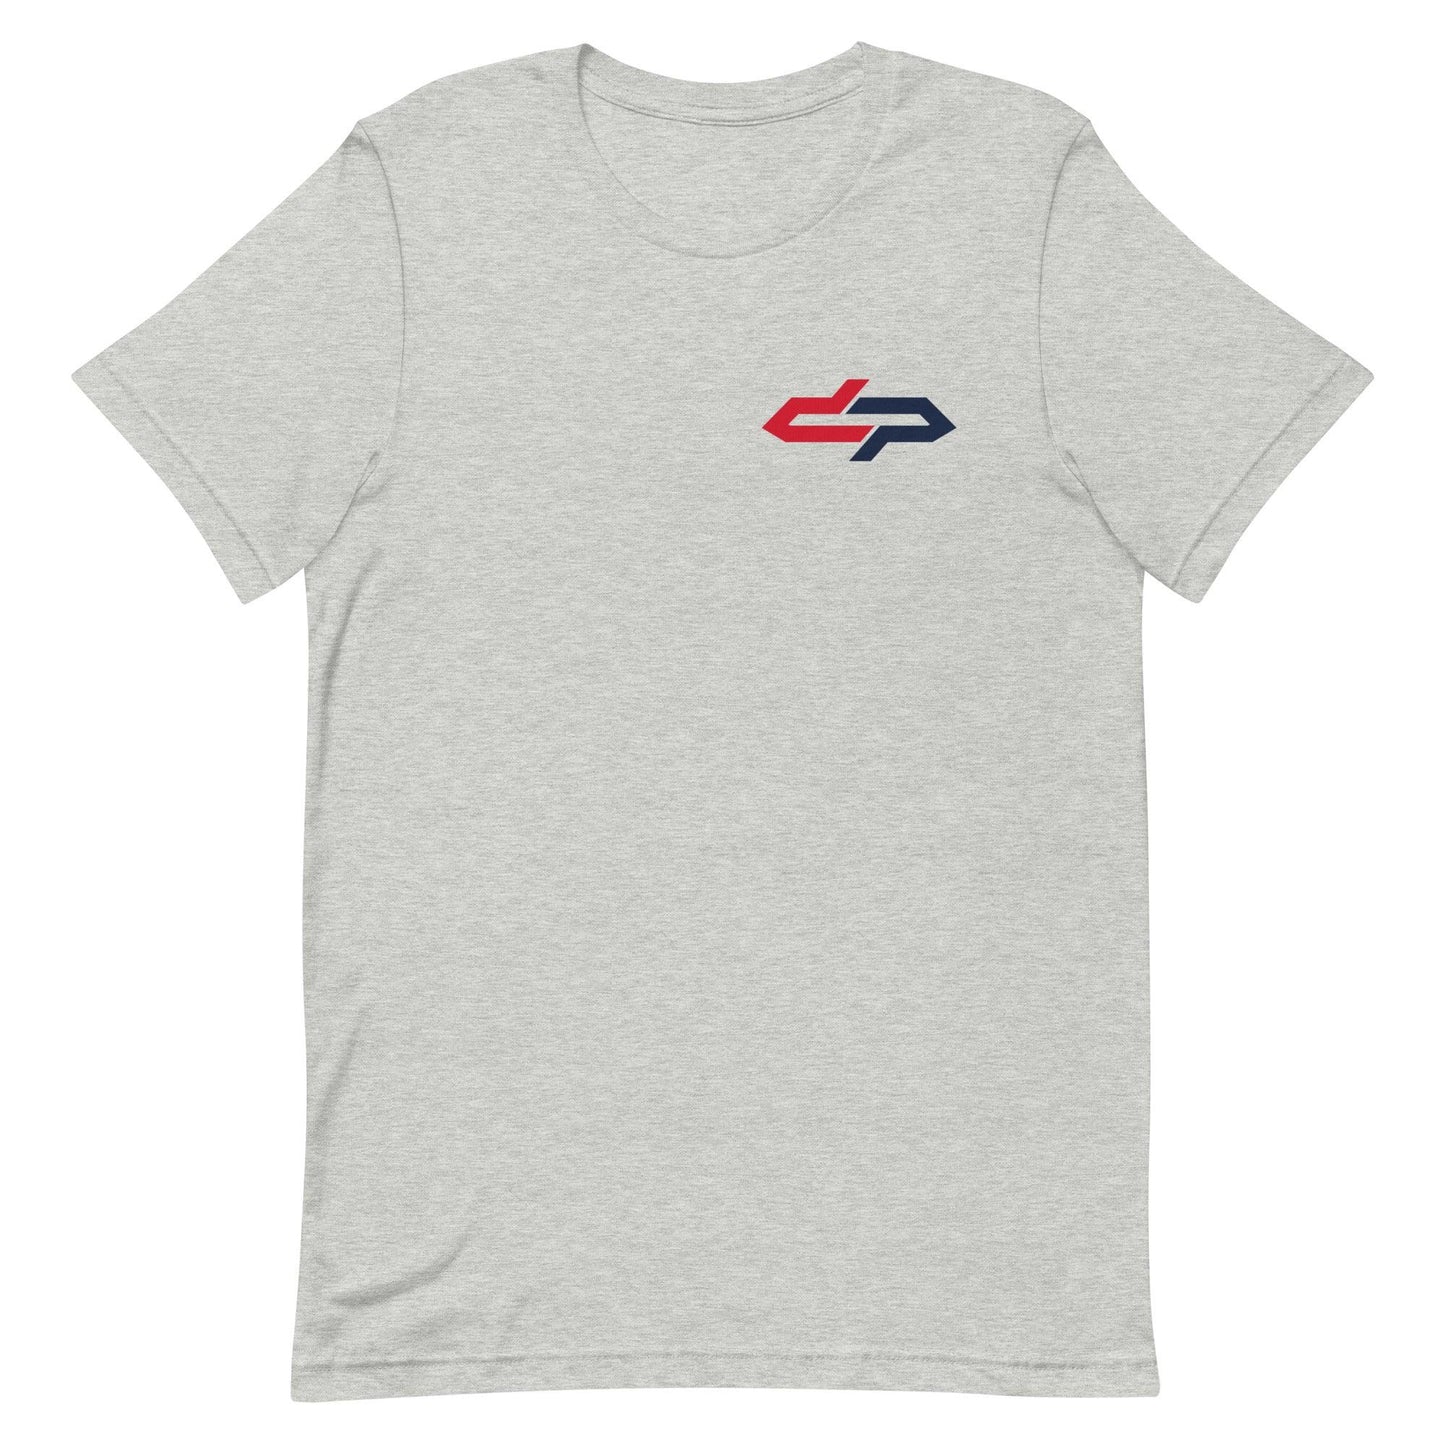 DeAntre Prince "Essential" t-shirt - Fan Arch